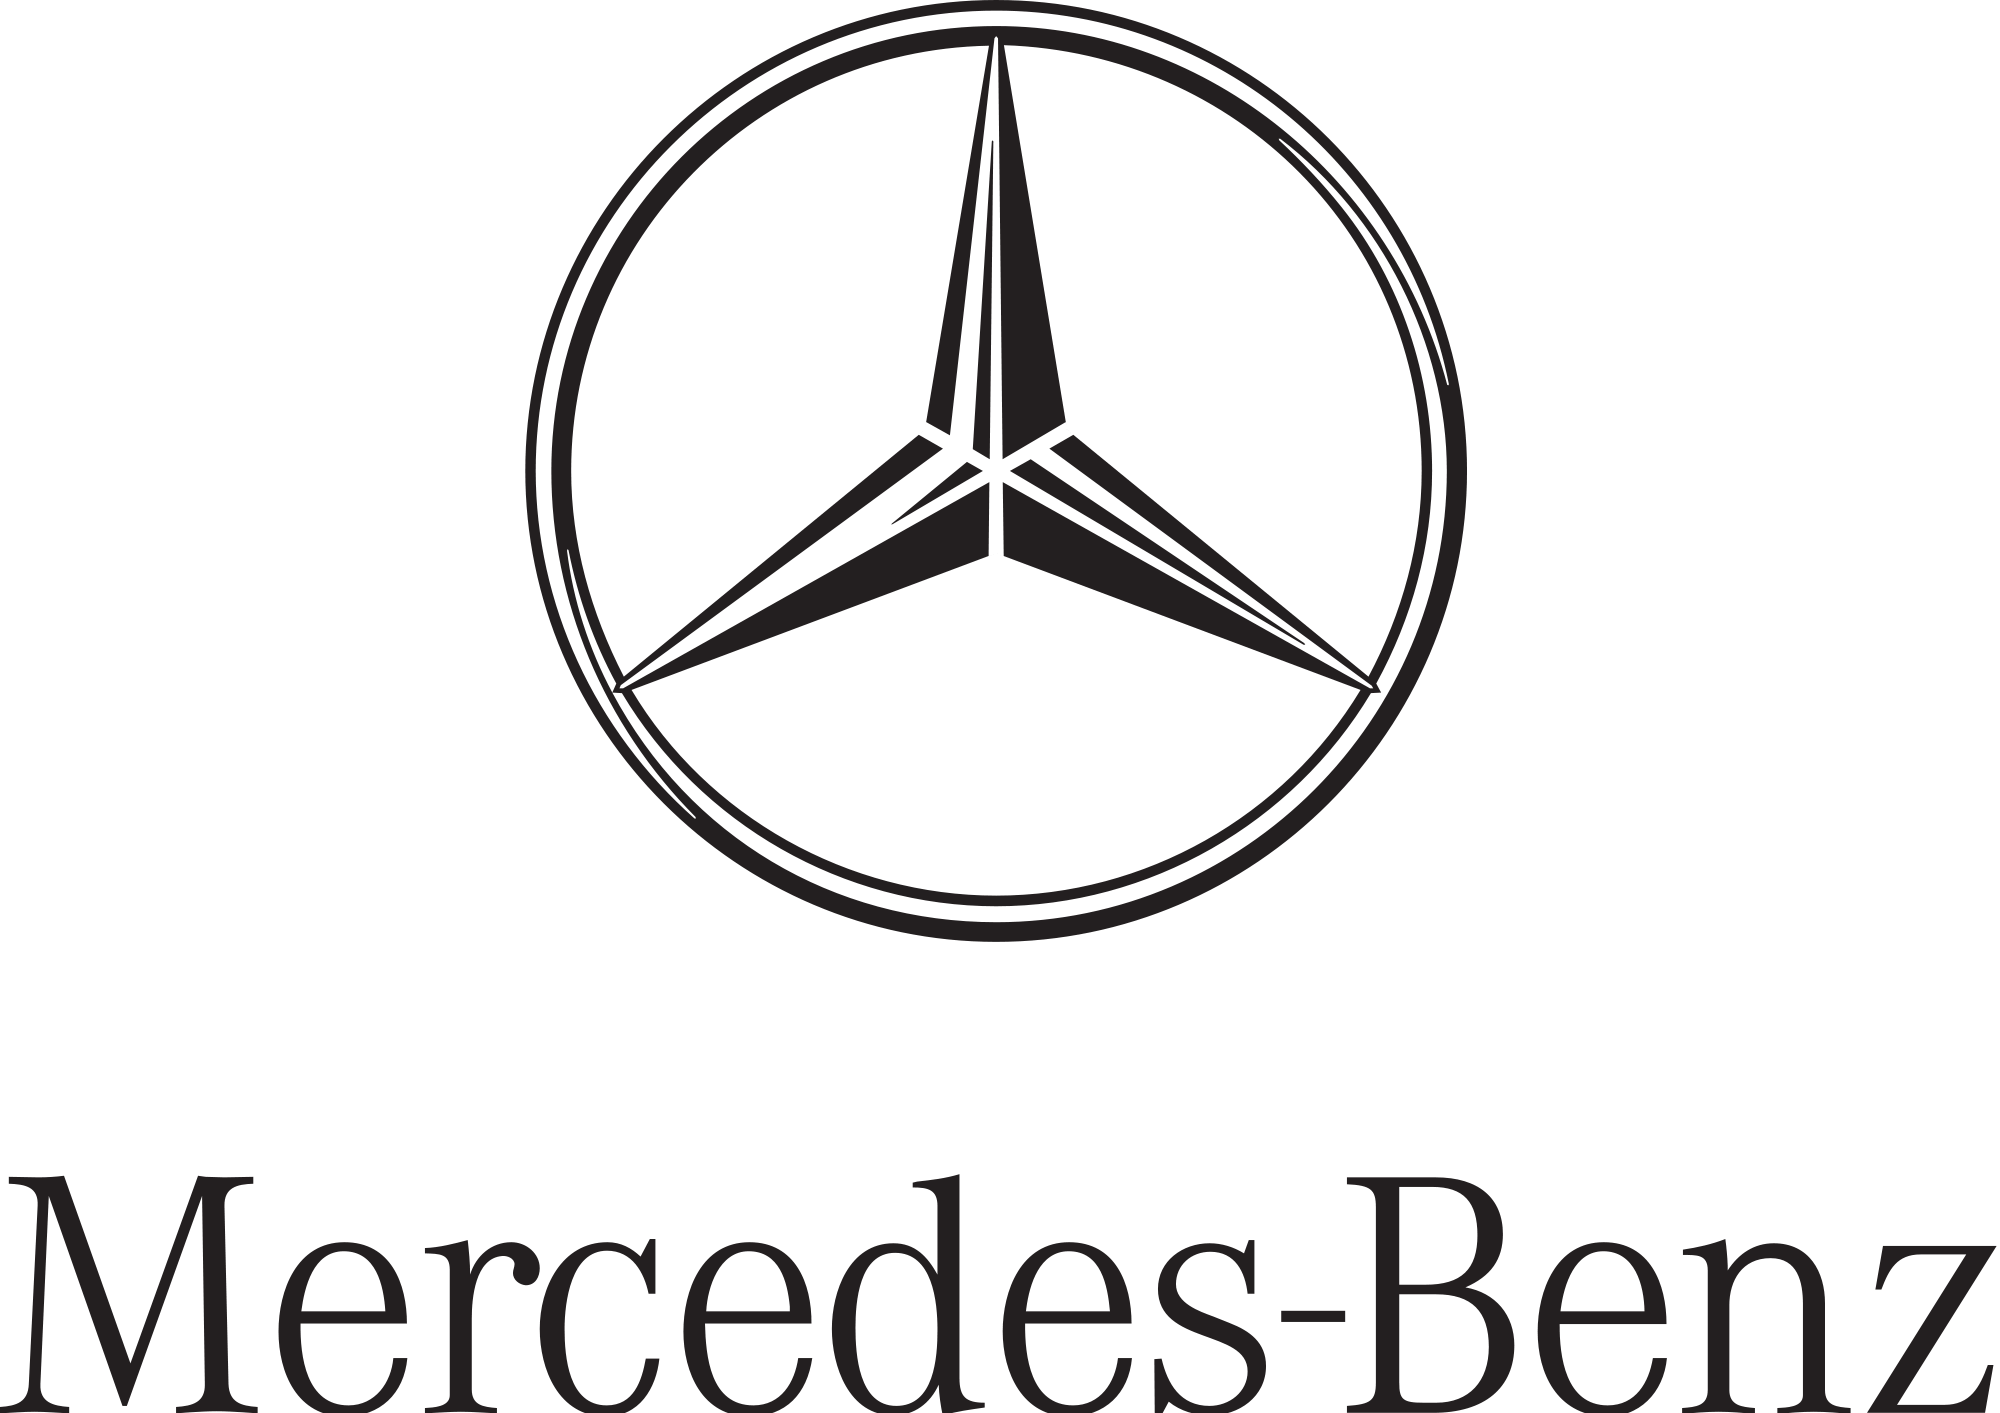 Benz Logo - Image - Mercedes-Benz Logo.png | AutoDB Wiki | FANDOM powered by Wikia